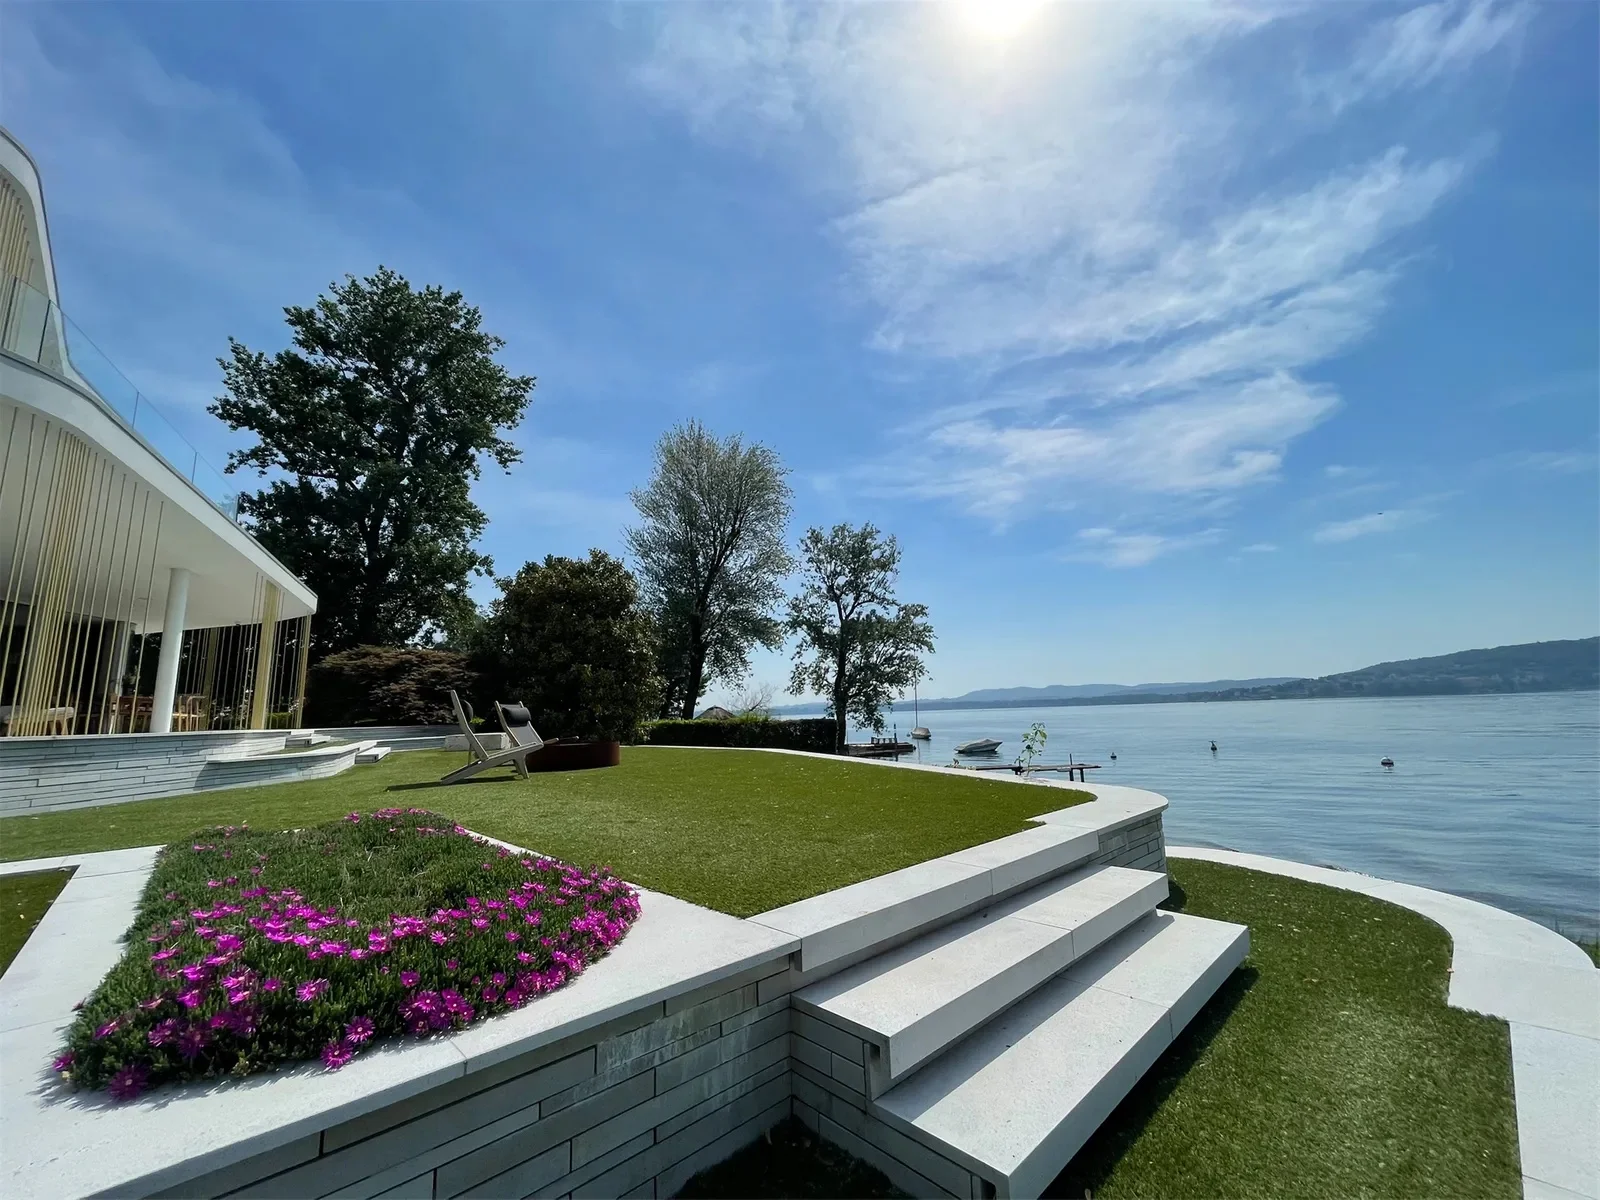 Luxury lakeside Italian villa